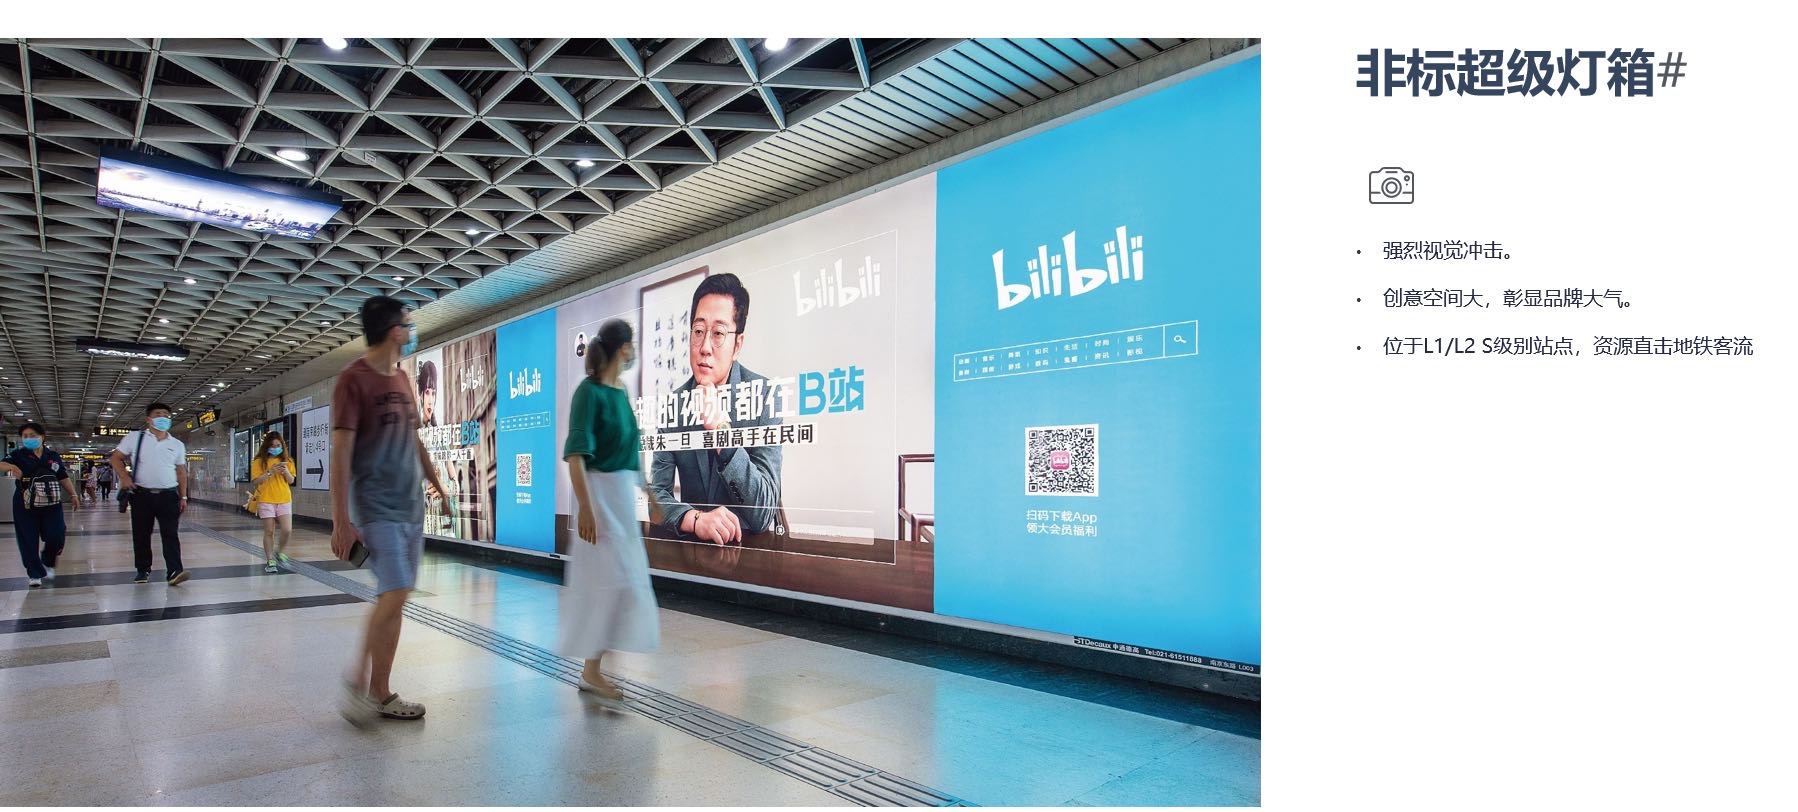 上海地铁18号线地铁轻轨灯箱